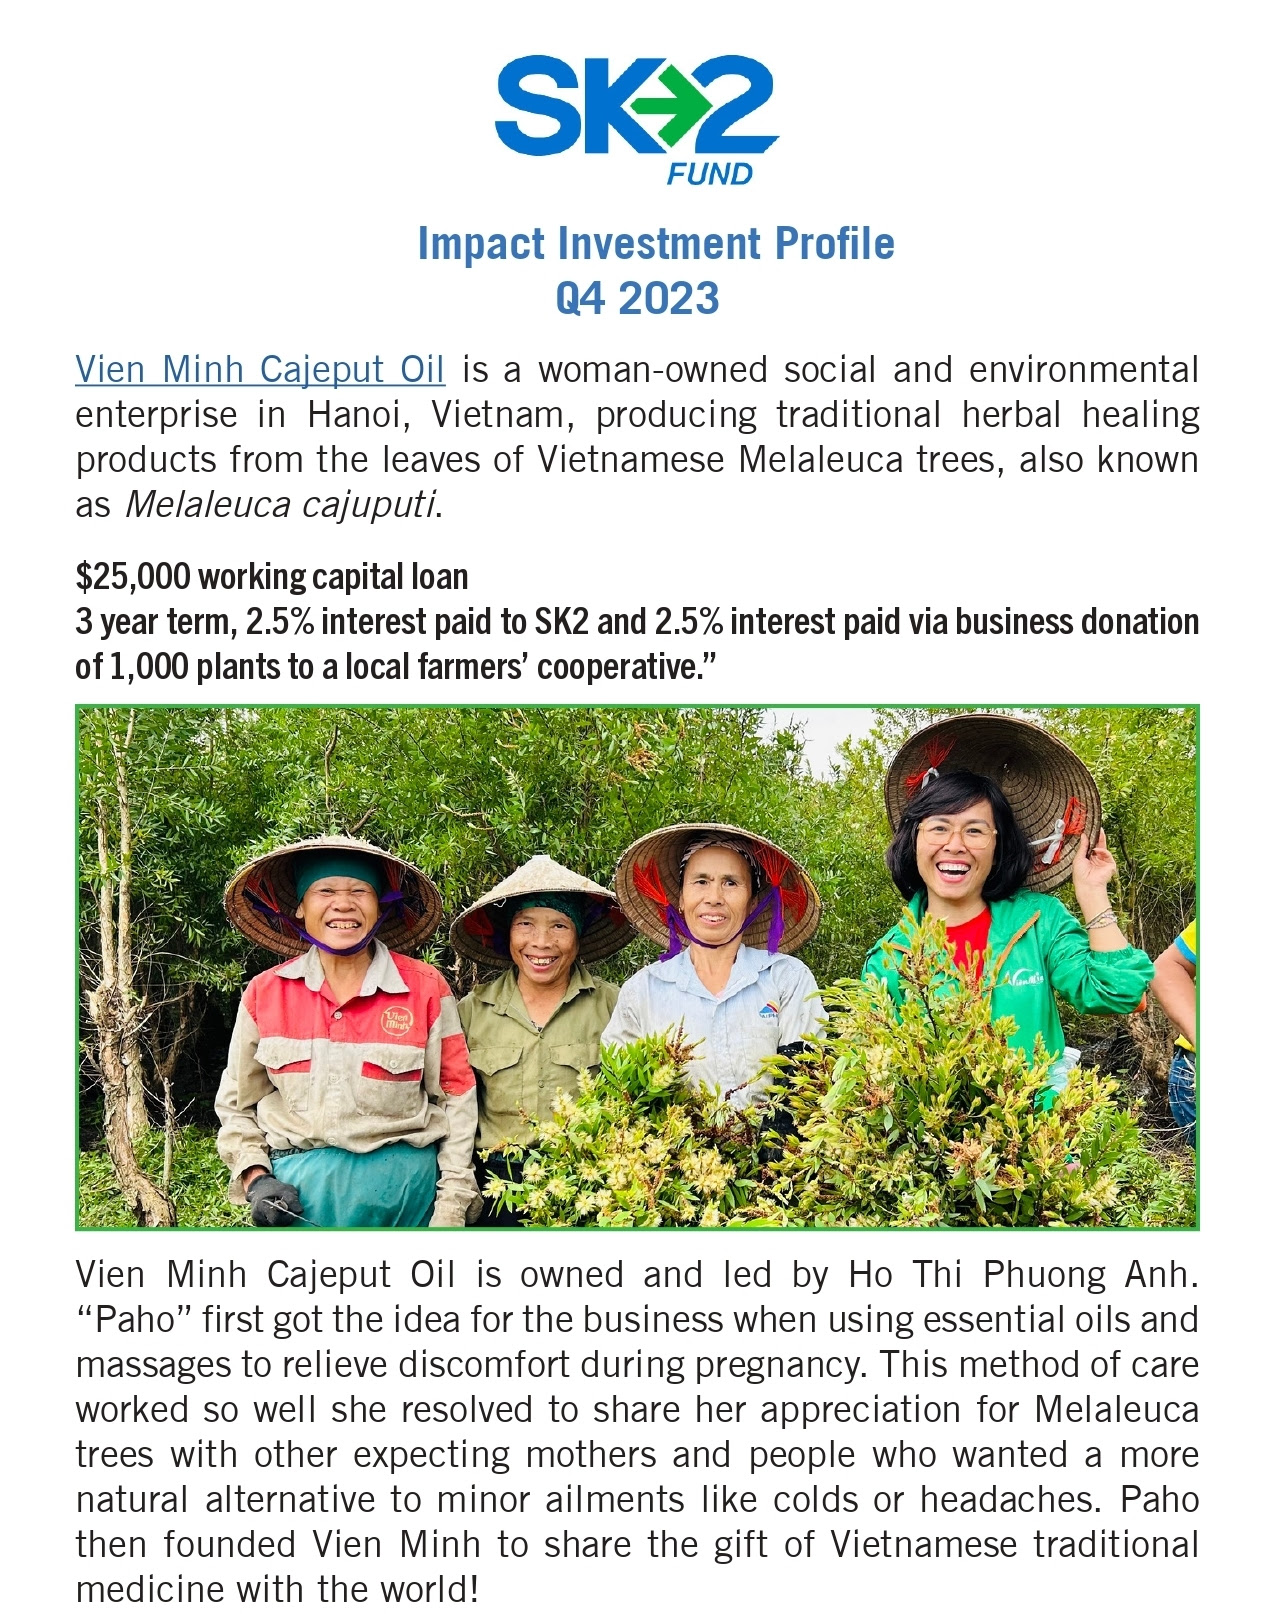 SK2 – Quỹ tác động xã hội của nước ngoài đầu tư cho Tràm Viên Minh